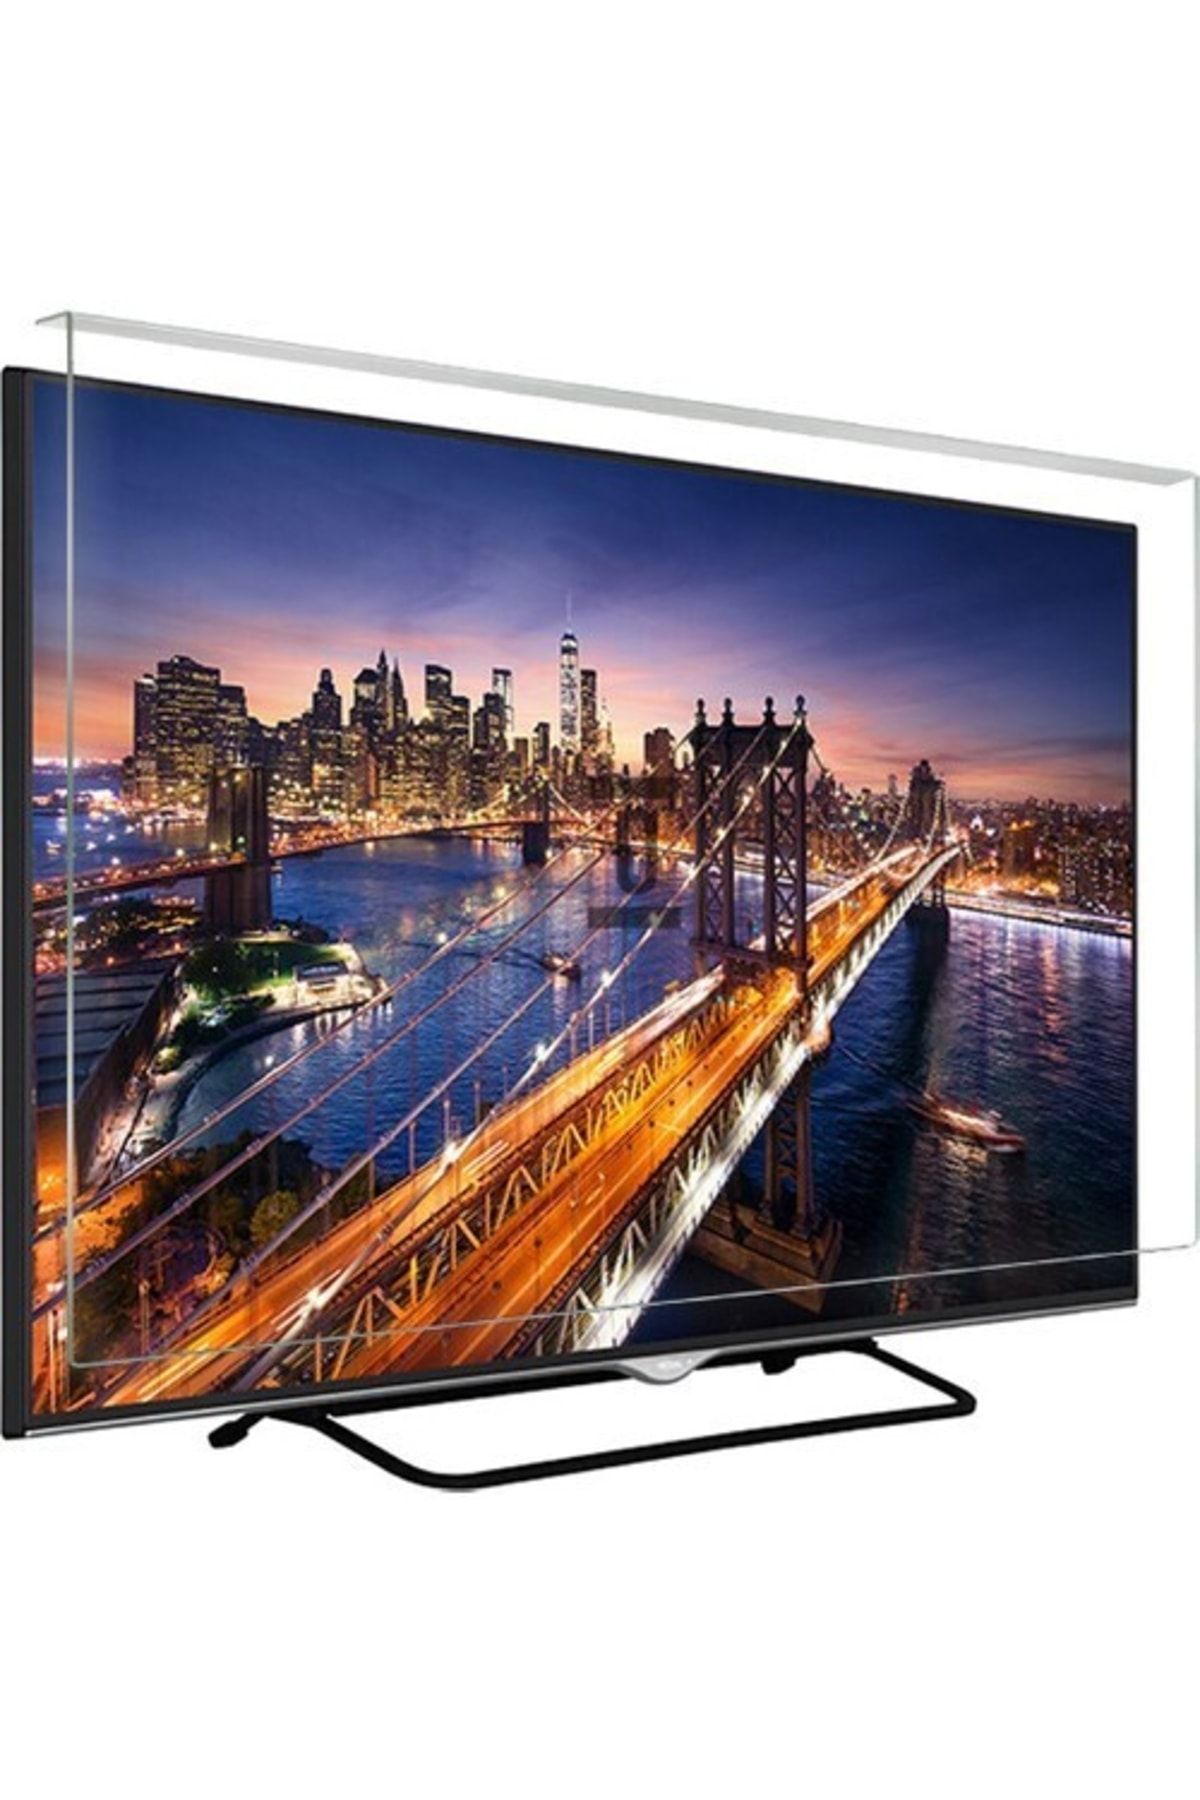 Telenova Asaf Online-evçelik 40d4001 Tv Ekran Koruyucu Düz (flat) Ekran